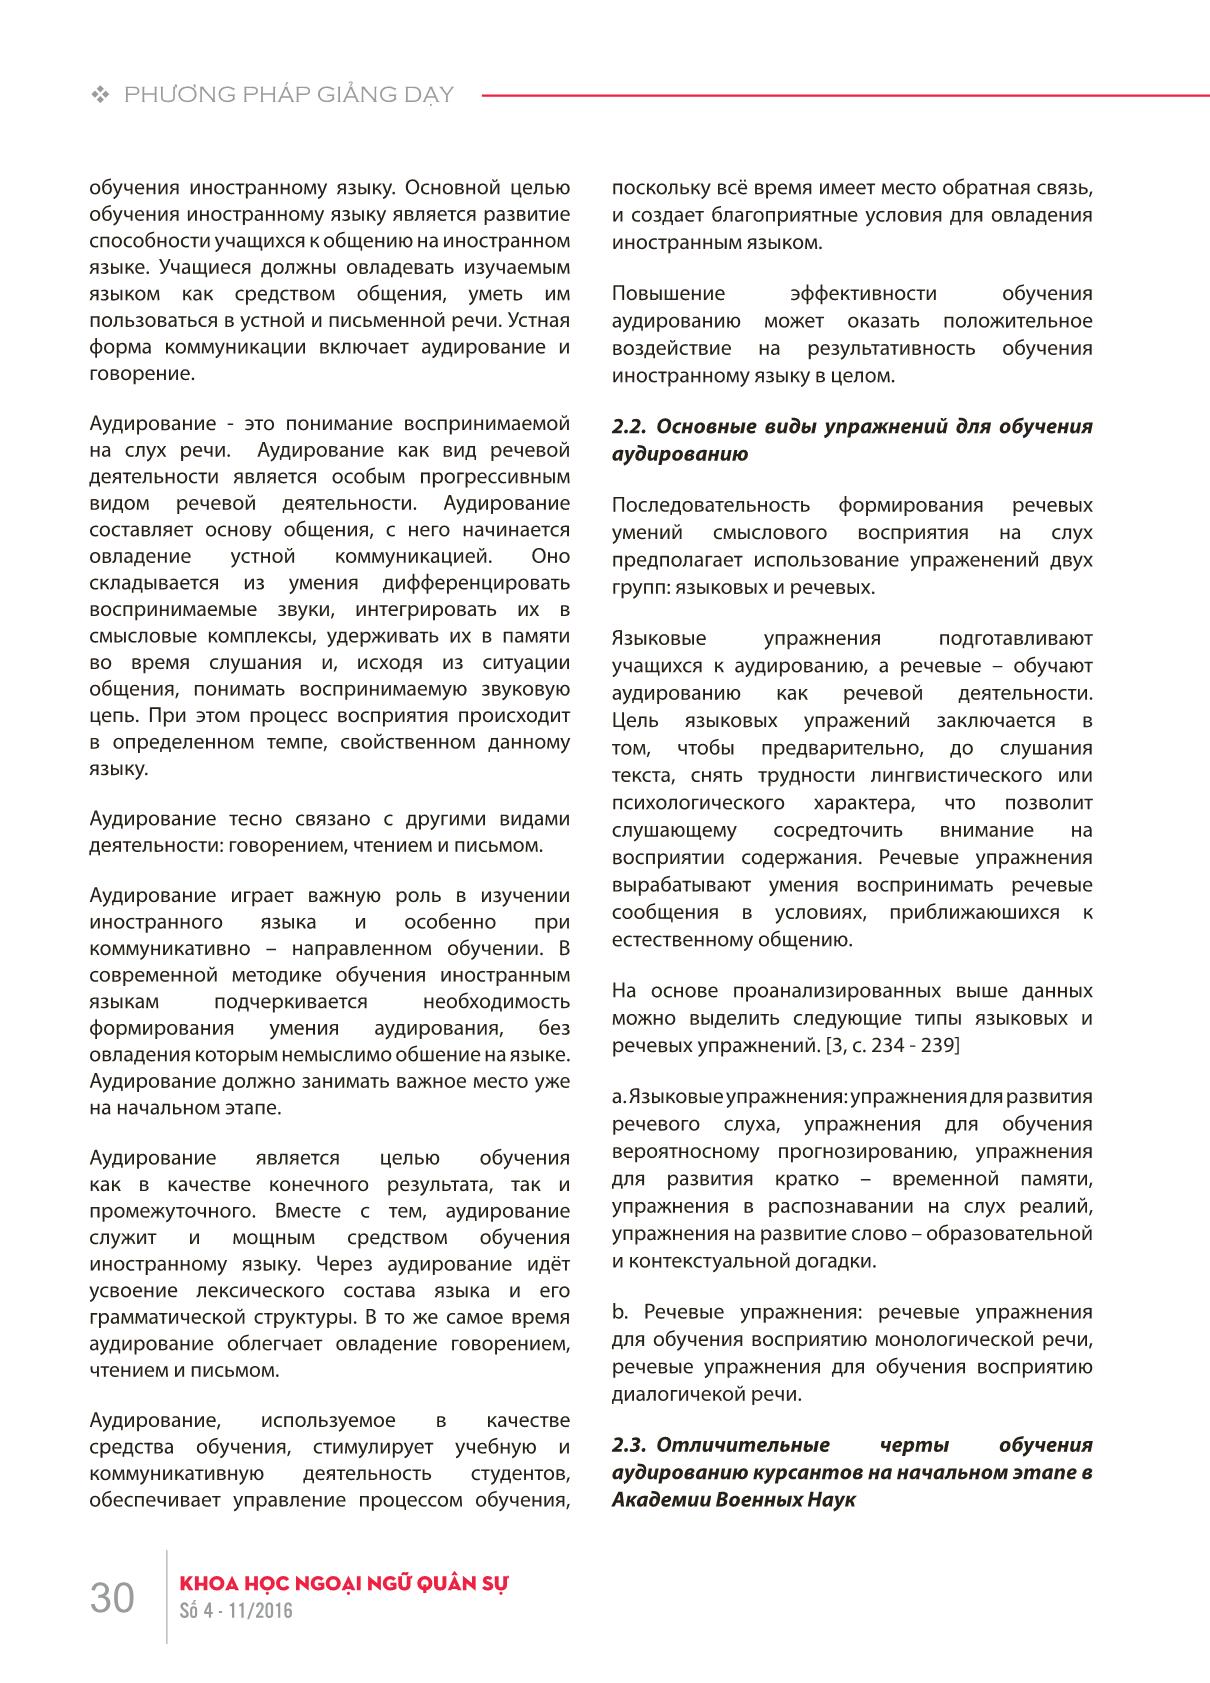 Xây dựng bài tập nghe trên máy tính cho học viên tiếng Nga giai đoạn cơ sở tại Học viện Khoa học Quân sự theo giáo trình “Đường đến nước Nga II” trang 2